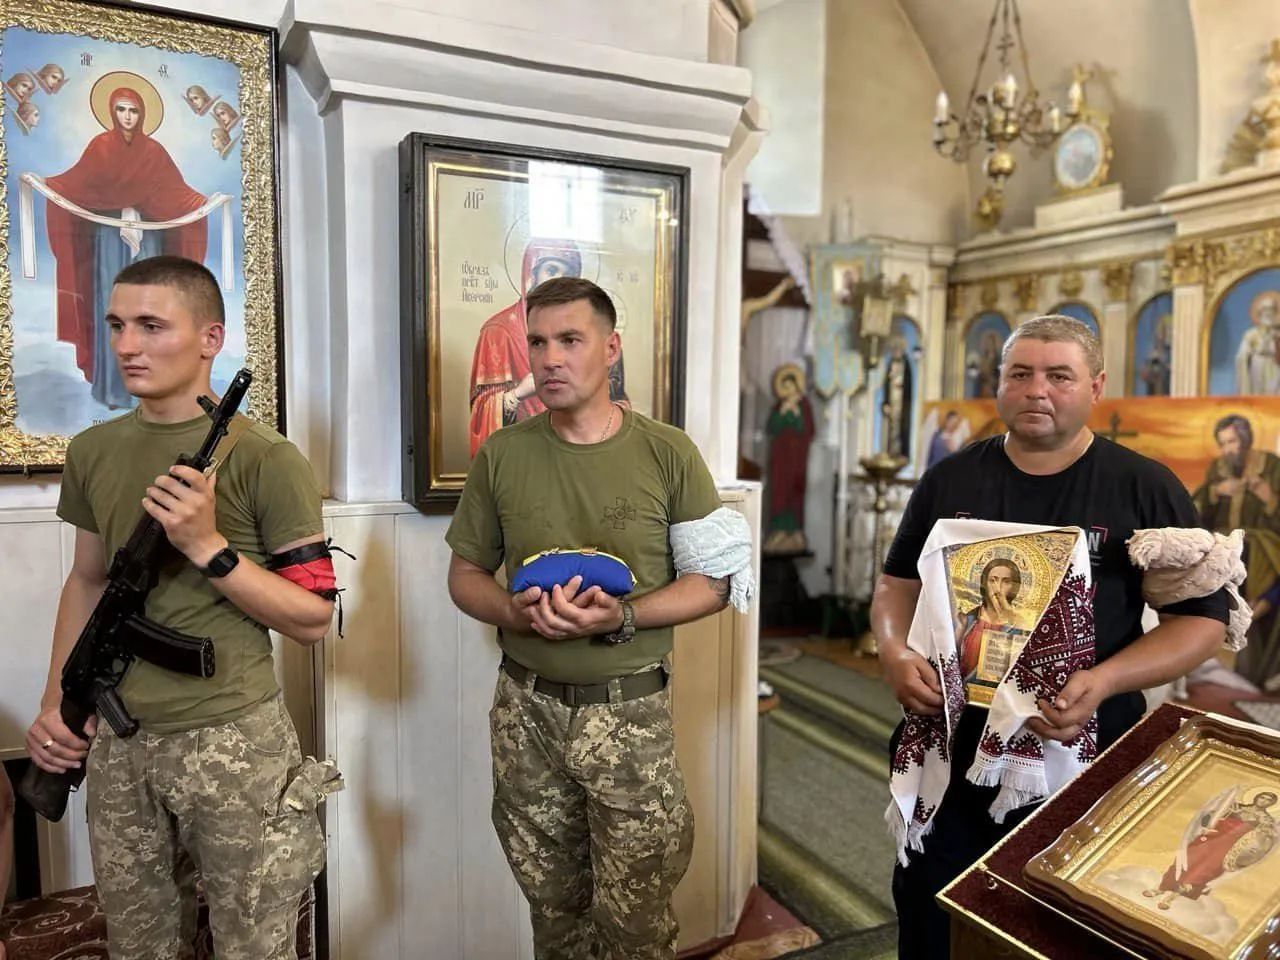 "Ніколи не ховався за спини інших": на Одещині попрощалися з рятувальником, який загинув на фронті. Фото і відео
